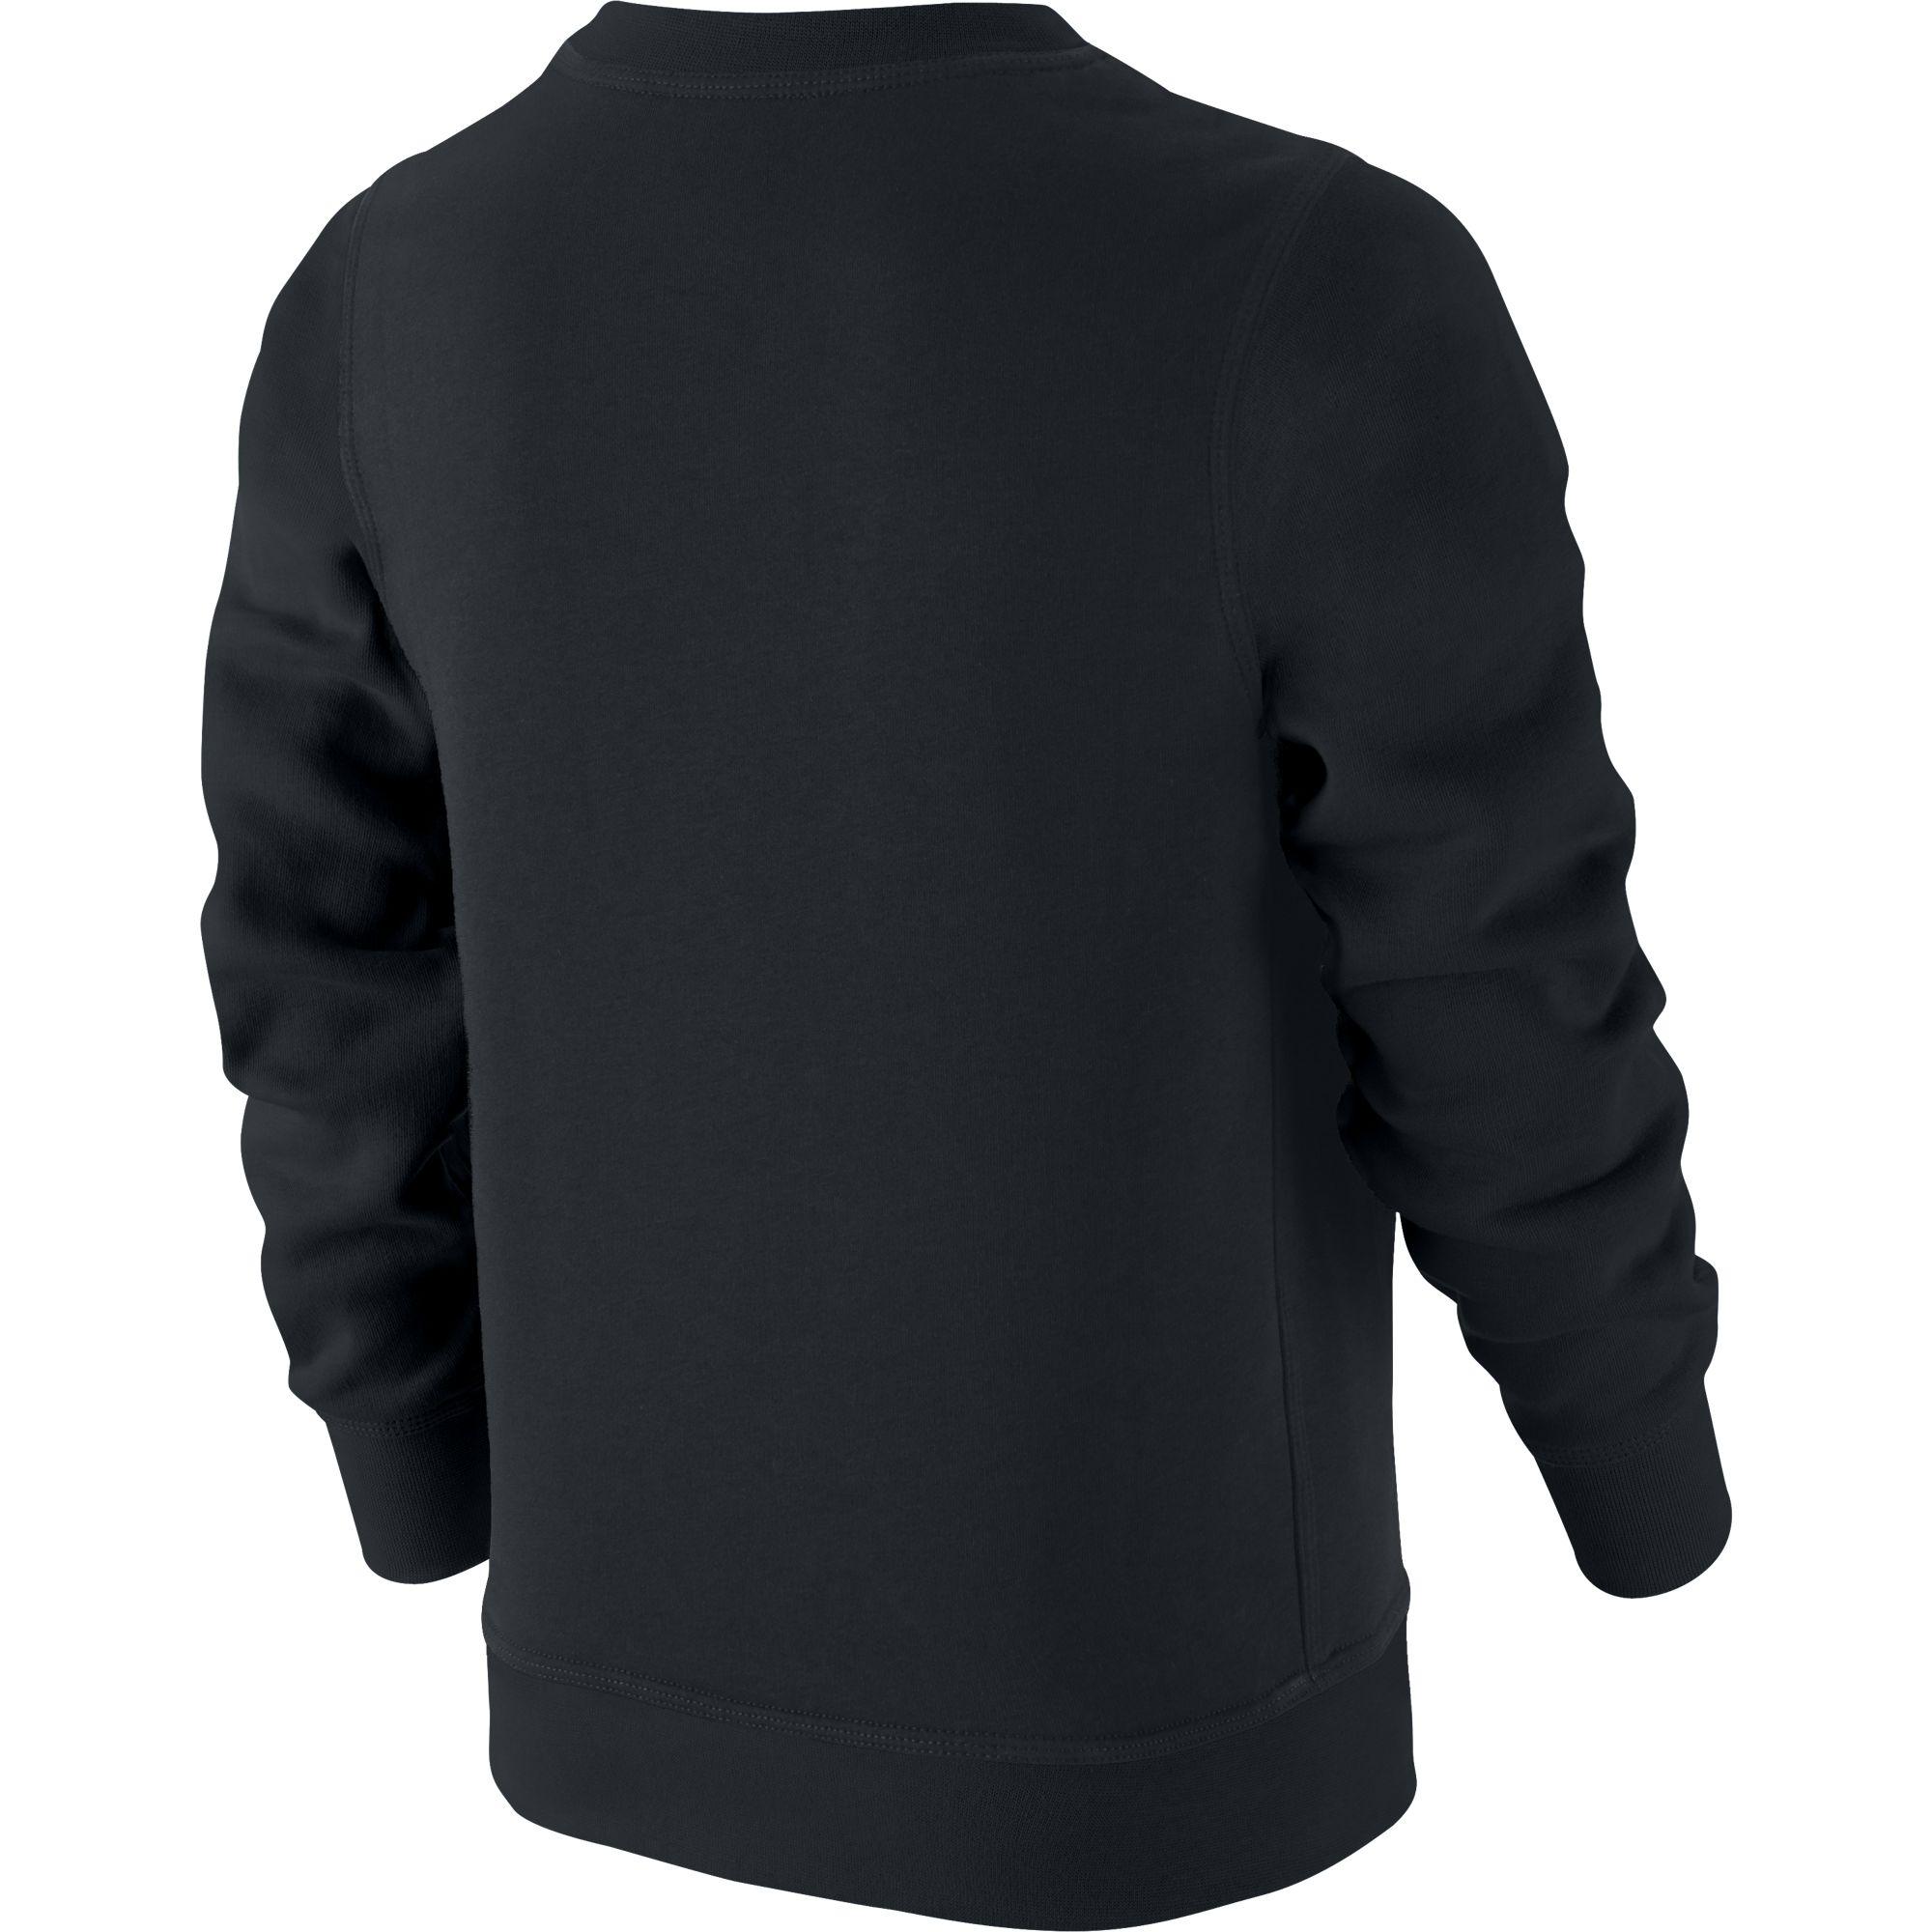 Nike Boys YA76 Brushed Fleece Graphic Crew Sweatshirt - Black ...